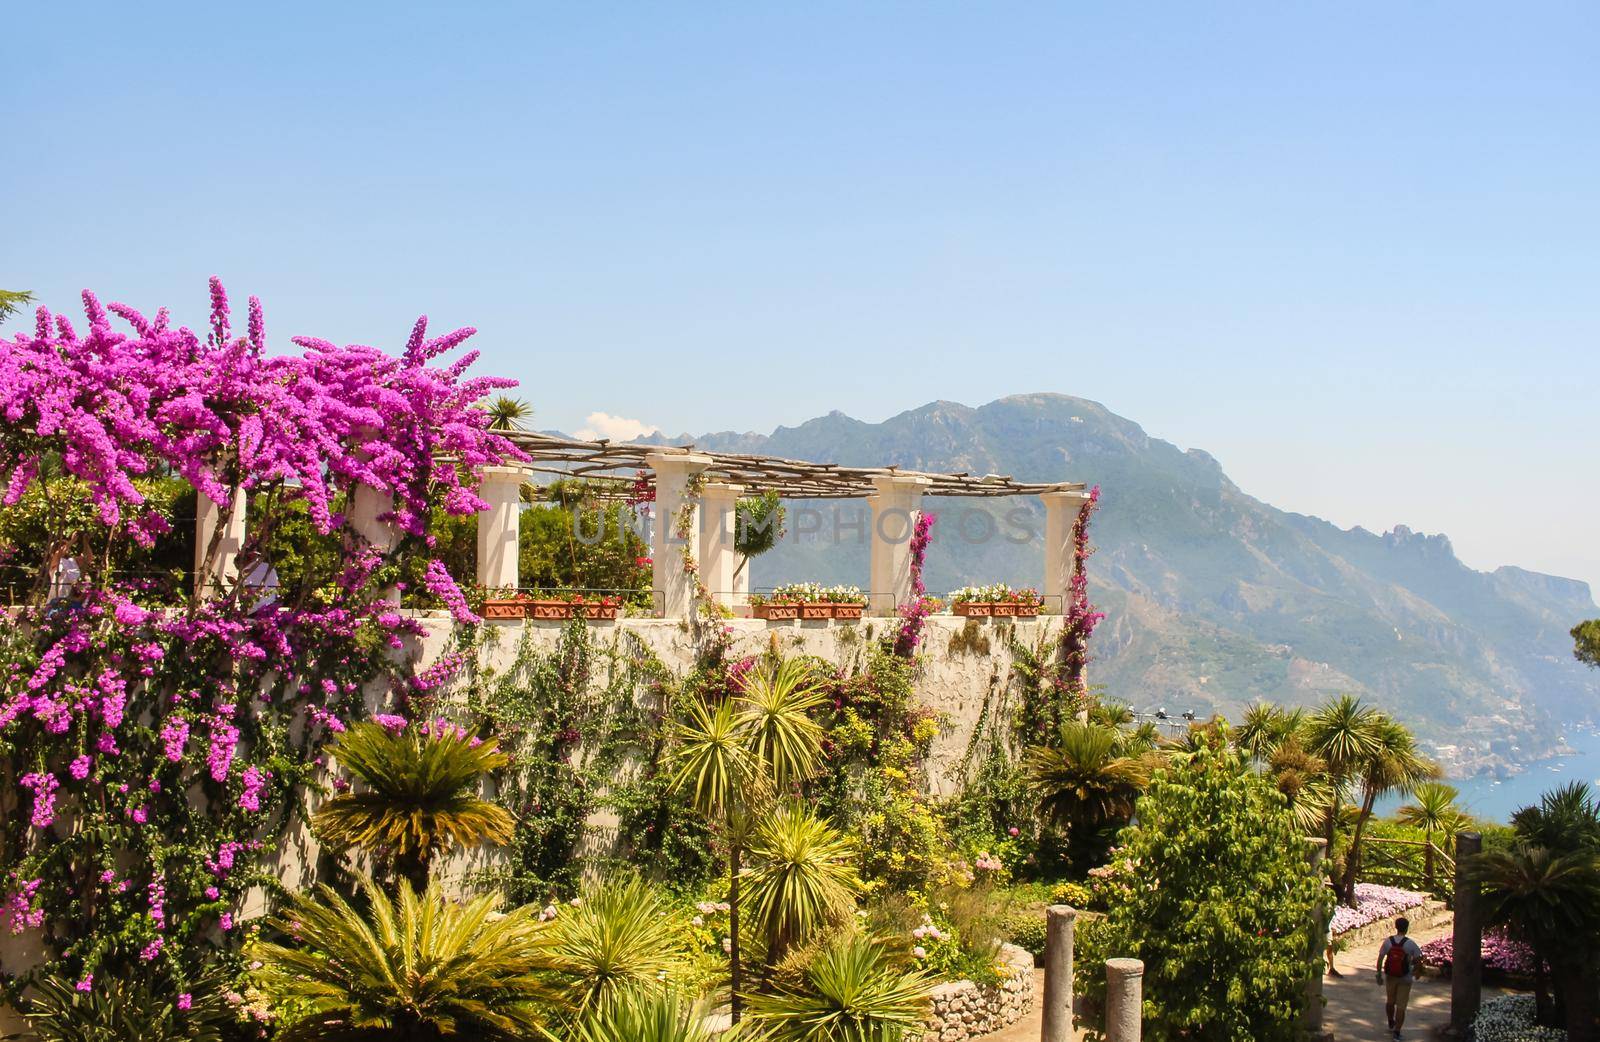 Vibrant garden in the historic Italian town of Ravello, overlooking the Amalfi coastline, Italy. by olifrenchphoto